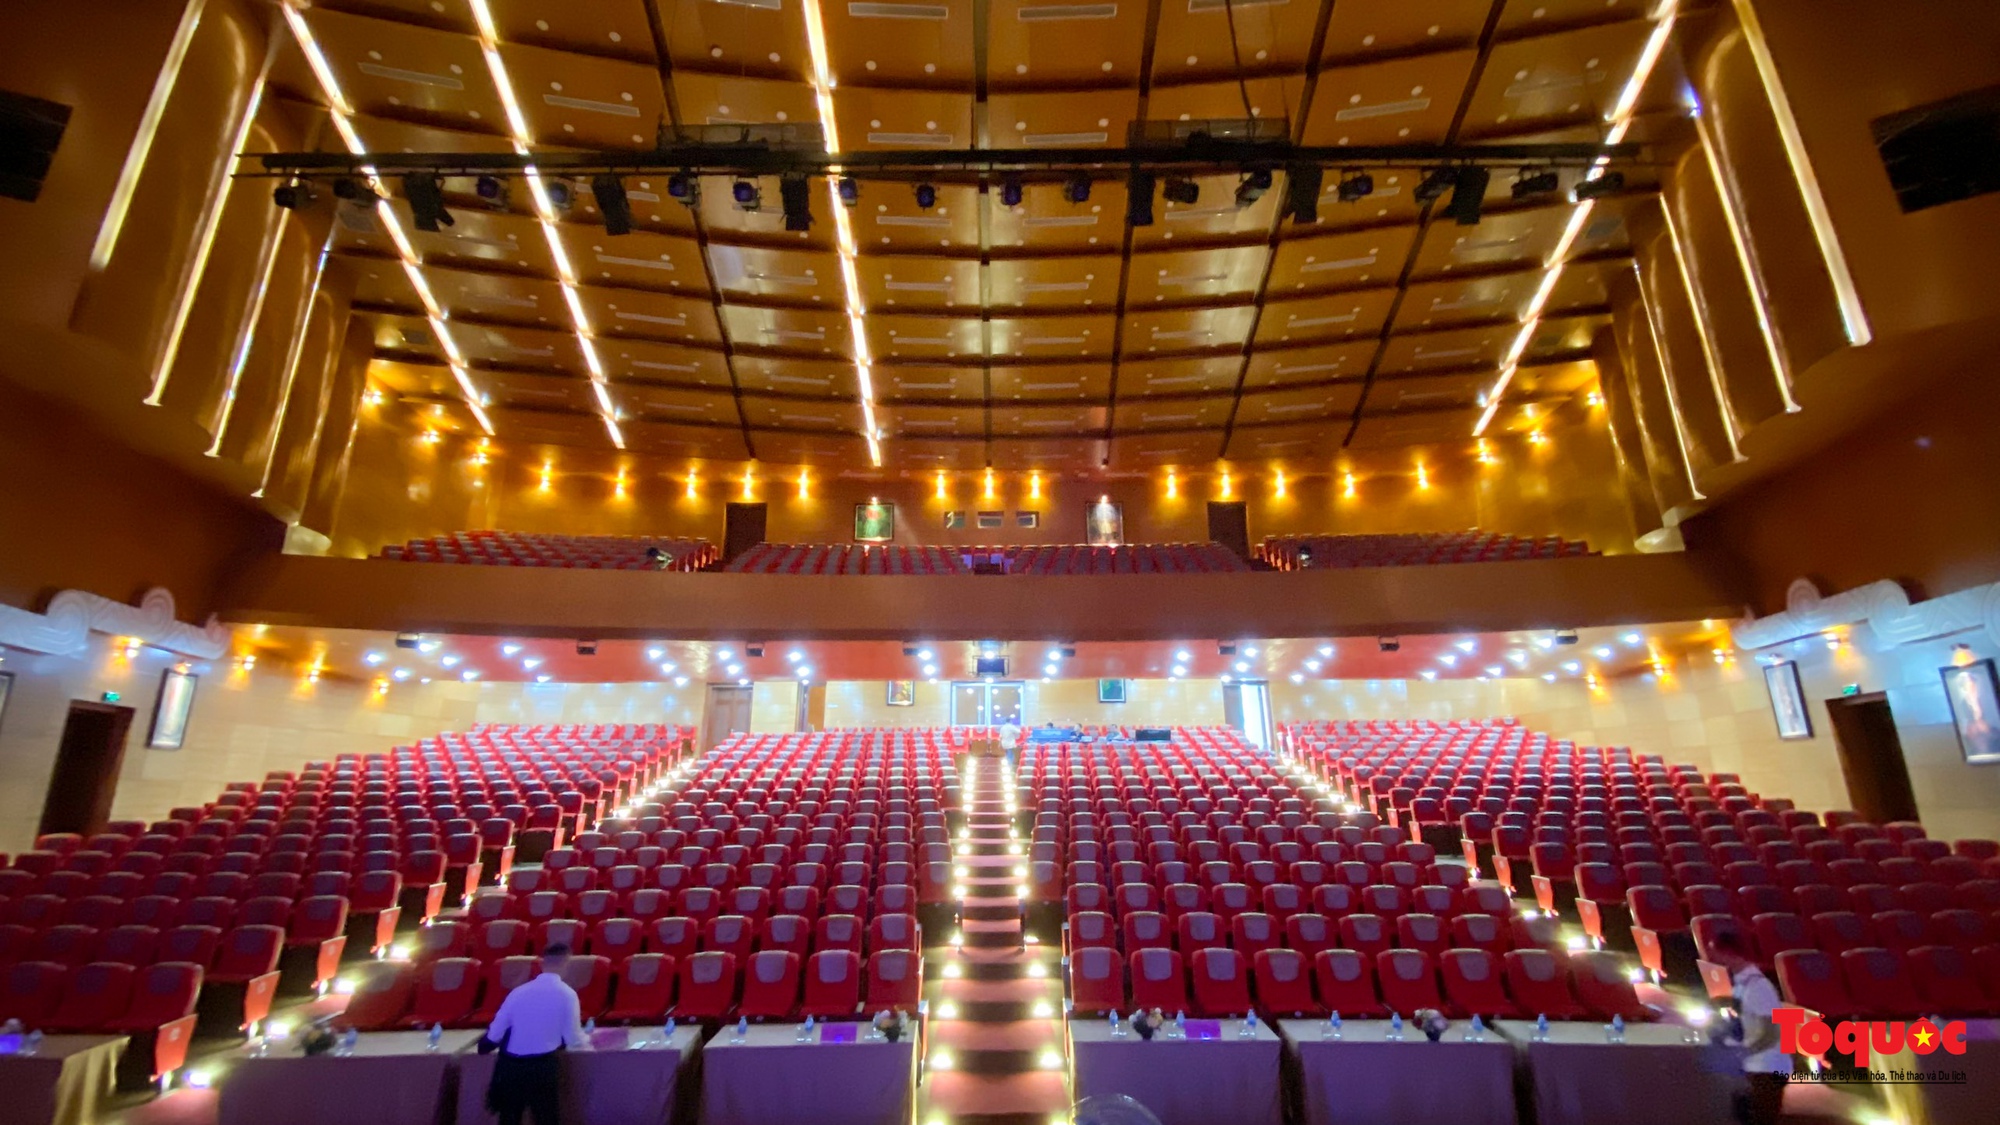 Mục sở thị Nhà hát Ca múa, nhạc dân gian hiện đại nhất khu vực Việt Bắc - Ảnh 6.